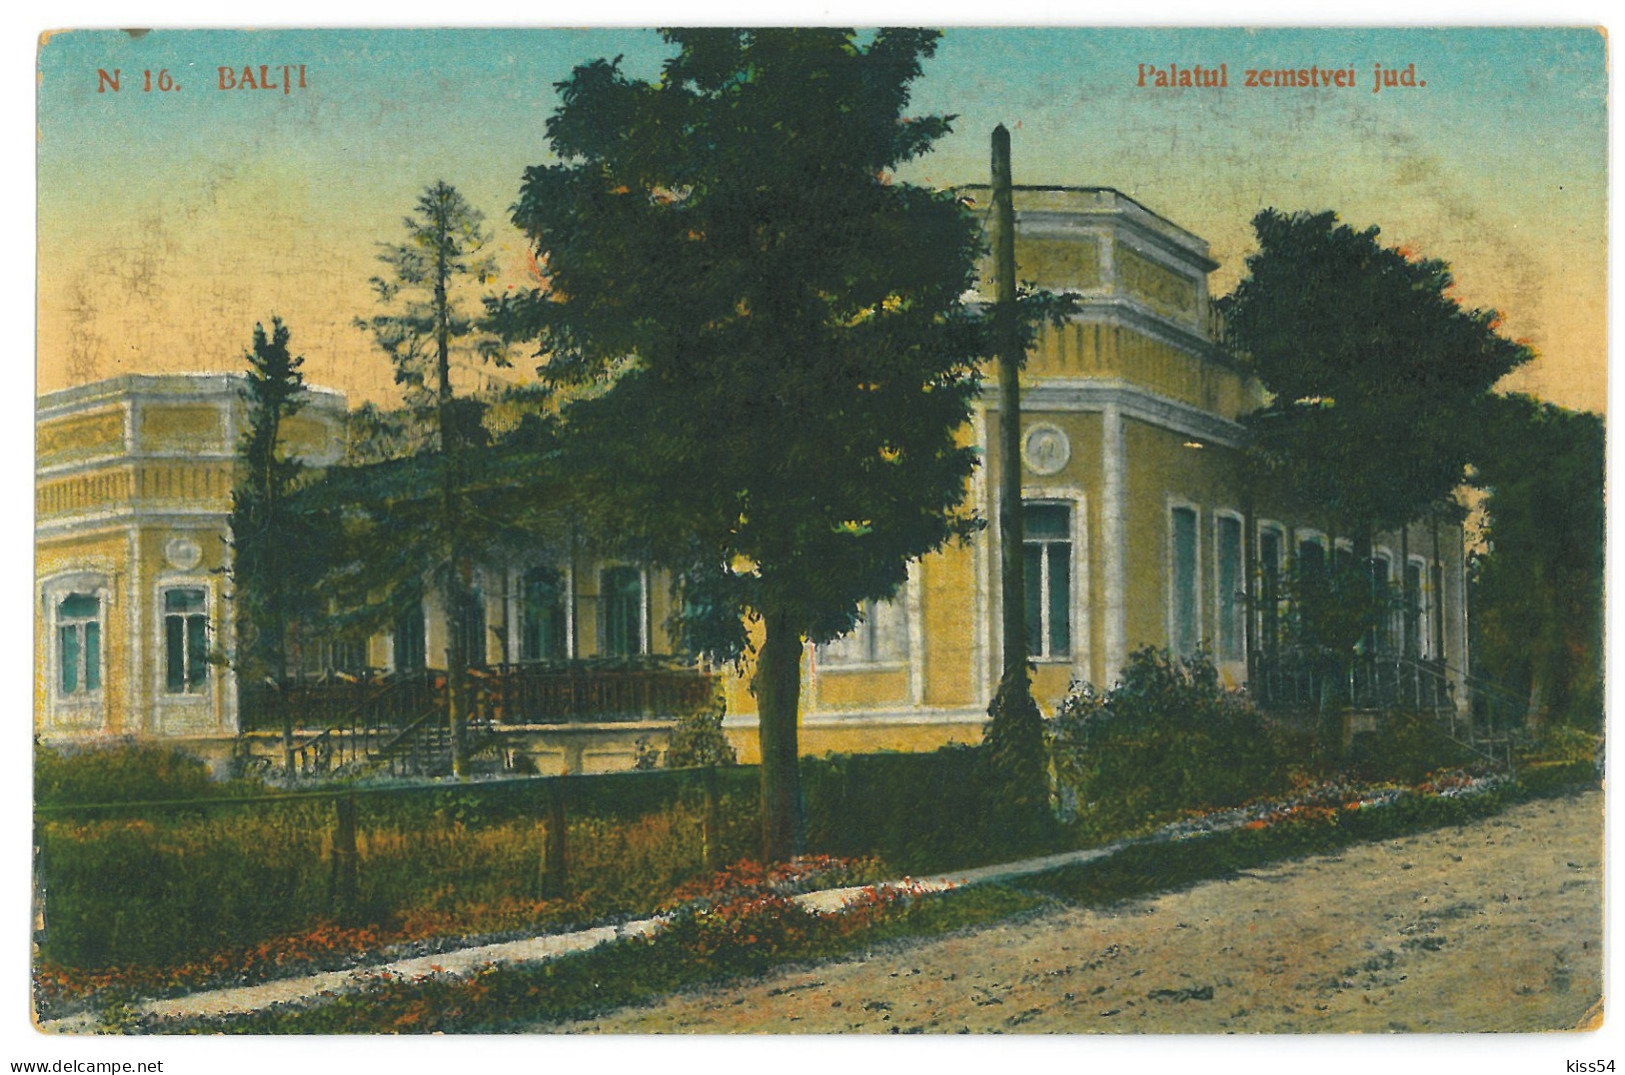 MOL 3 - 23622 BALTI, Palace, Moldova - Old Postcard - Unused - Moldawien (Moldova)